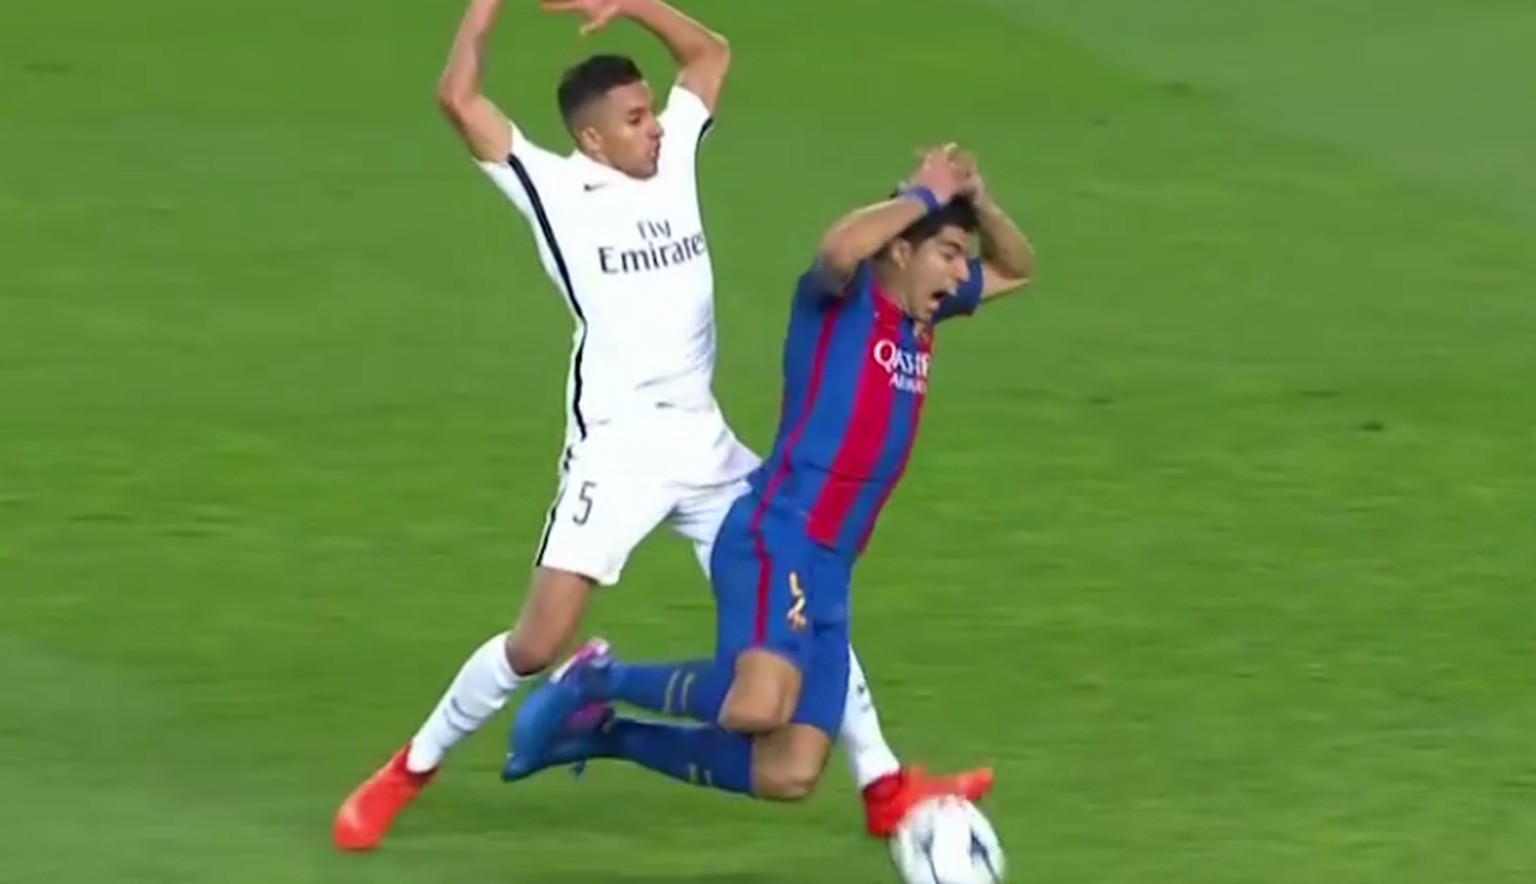 Die alles entscheidende Szene: Marquinhos berührt Luis Suarez kurz an der Schulter. Dieser nimmt die Einladung dankend an ... Elfmeter!